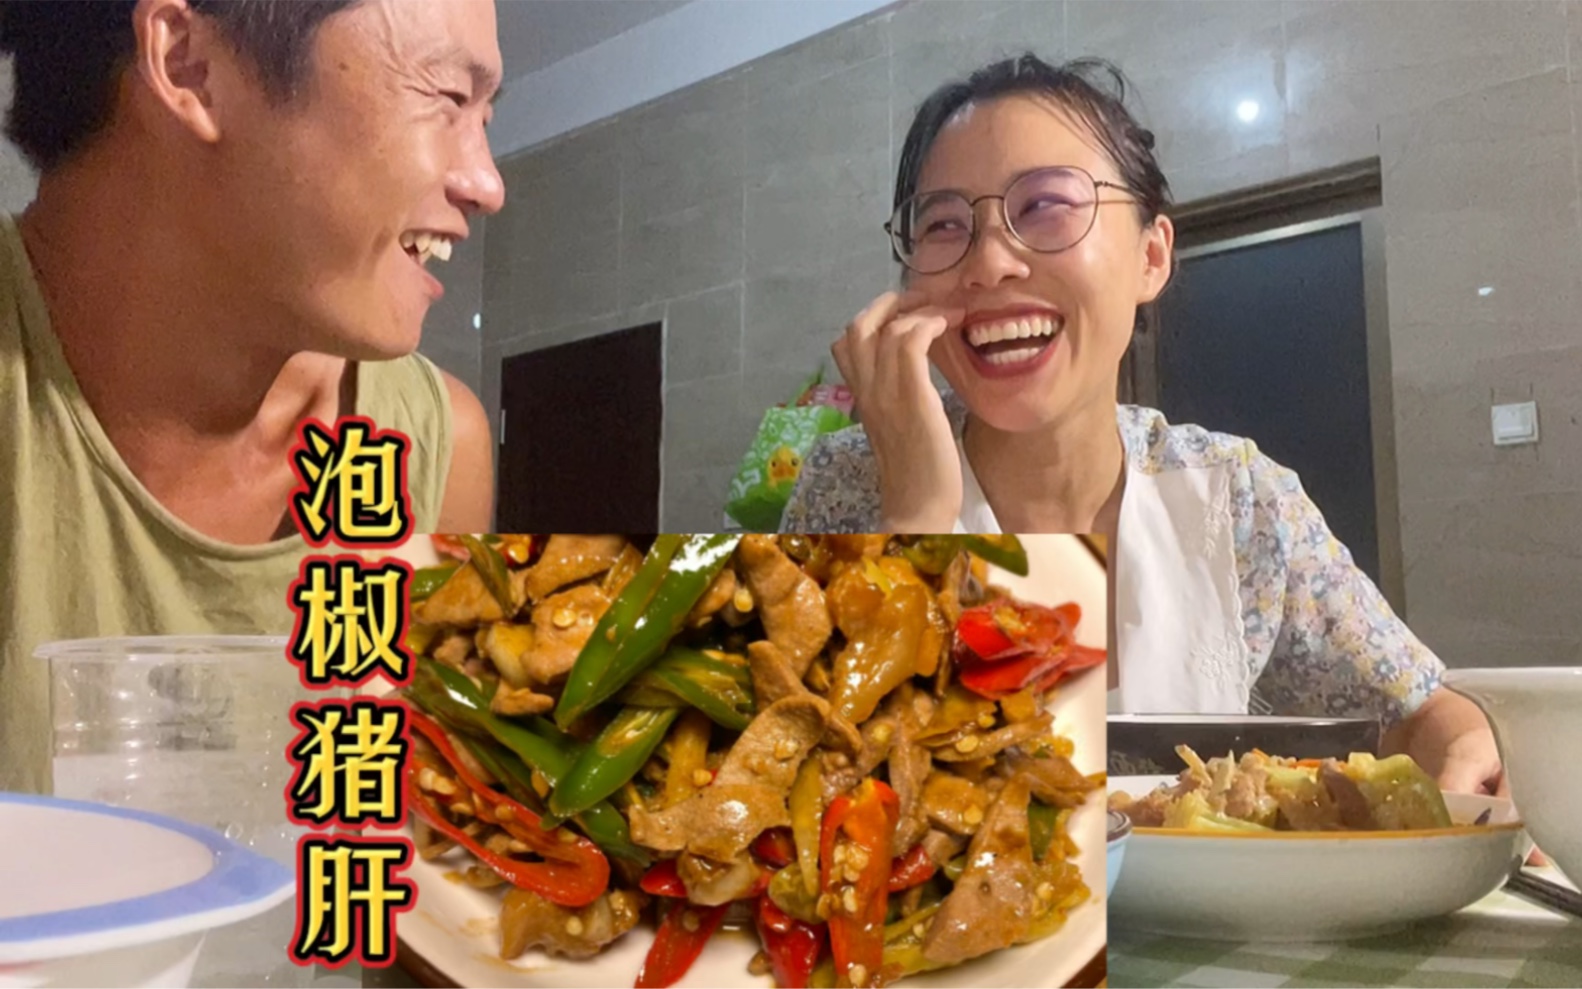 【民工家庭生活记录】媳妇花5元给老公做了一盘超级下饭菜，看他笑的多开心。哈哈